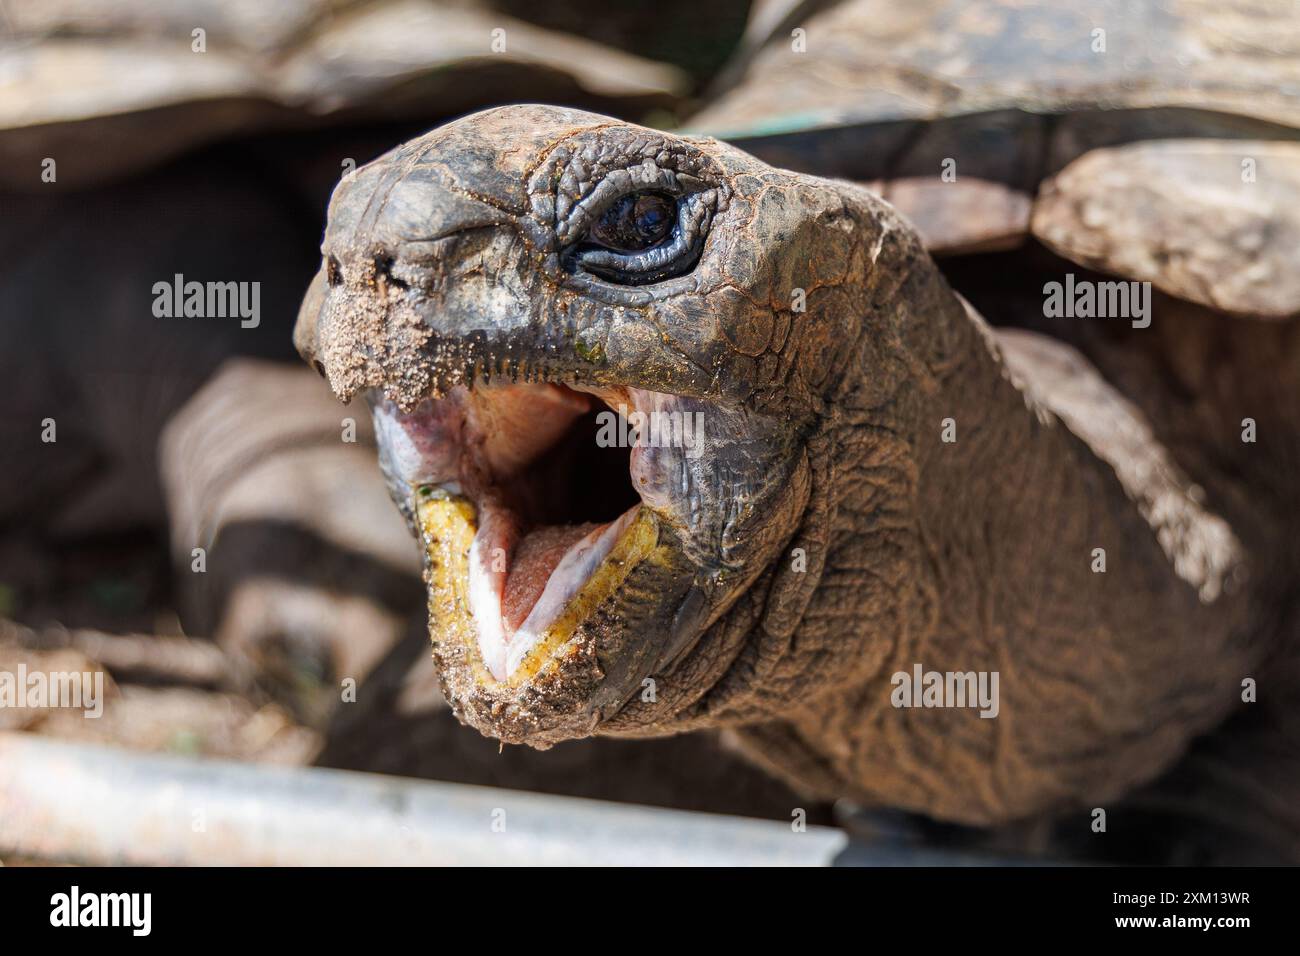 Nahaufnahme einer Schildkröte mit lachendem Gesichtsausdruck Stock Photo